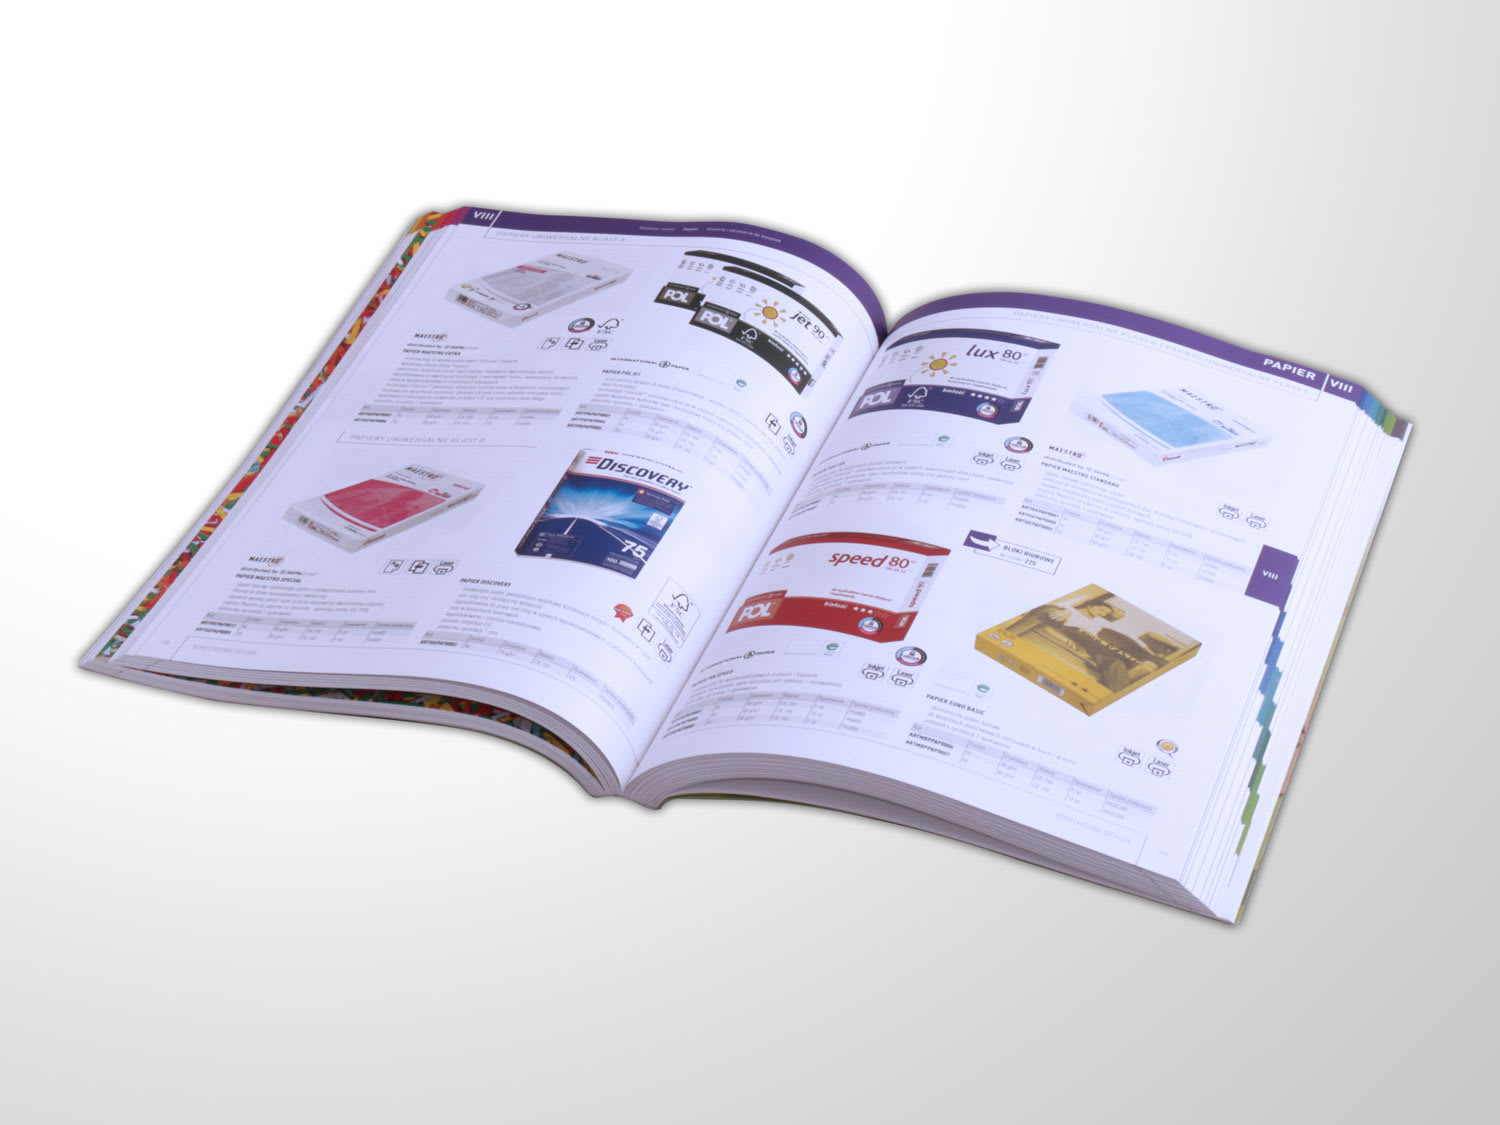 Ik wil niet Glad deksel Design a professional leaflet, flyer, brochure for you by Eurydyka | Fiverr